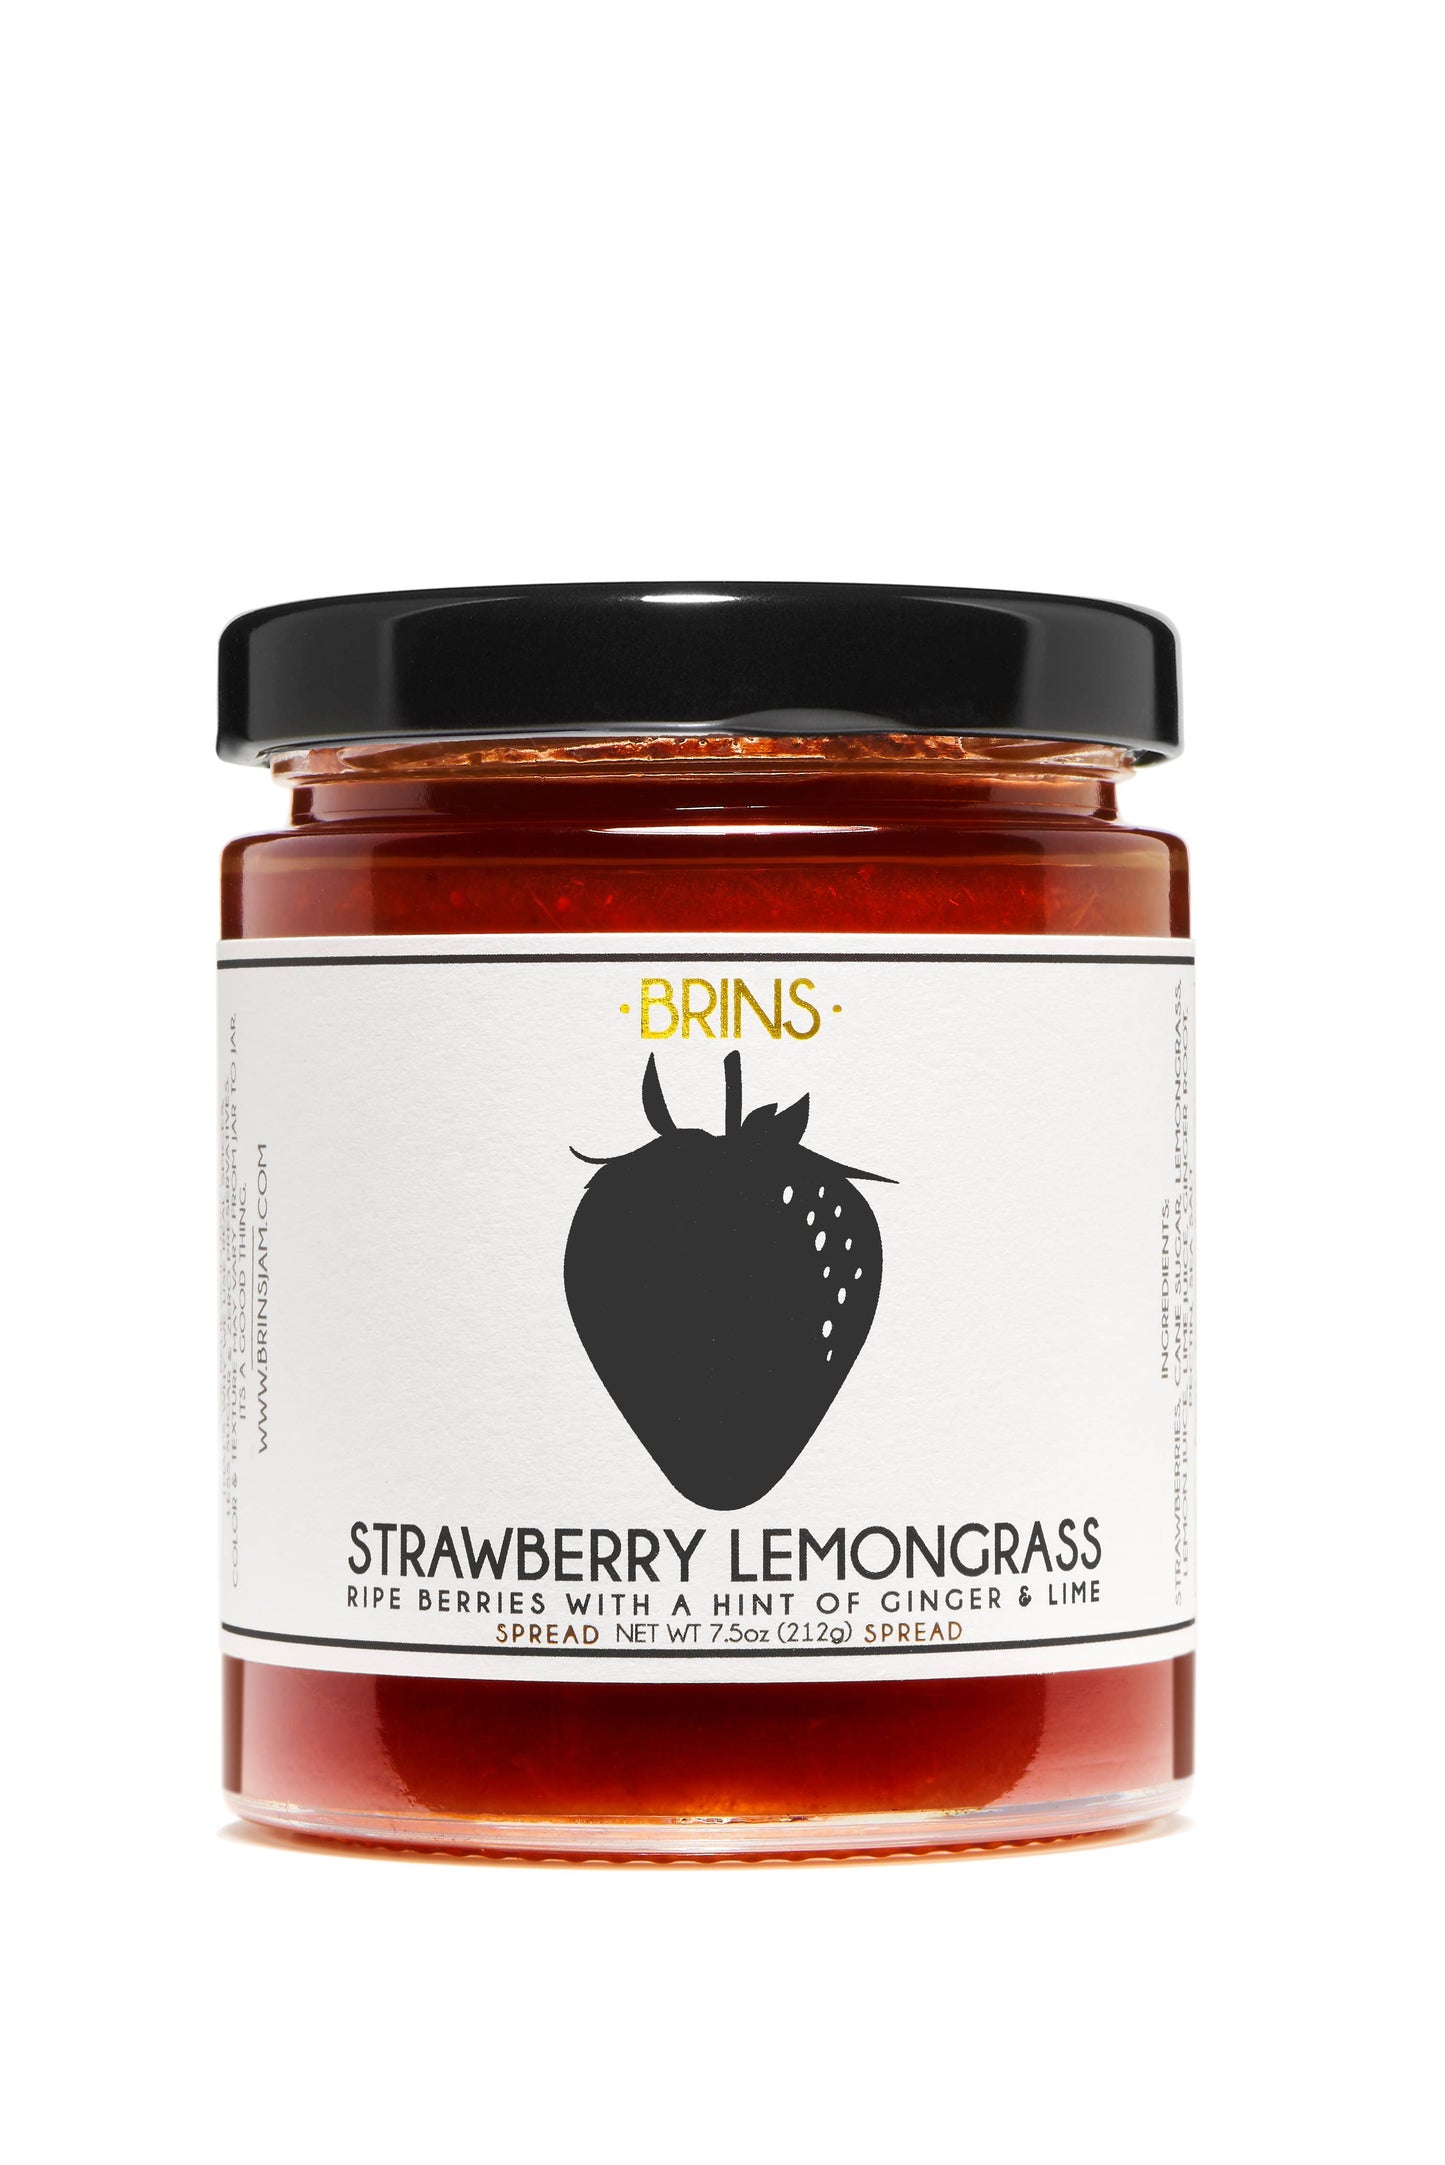 BRINS - Strawberry Lemongrass Jam Spread